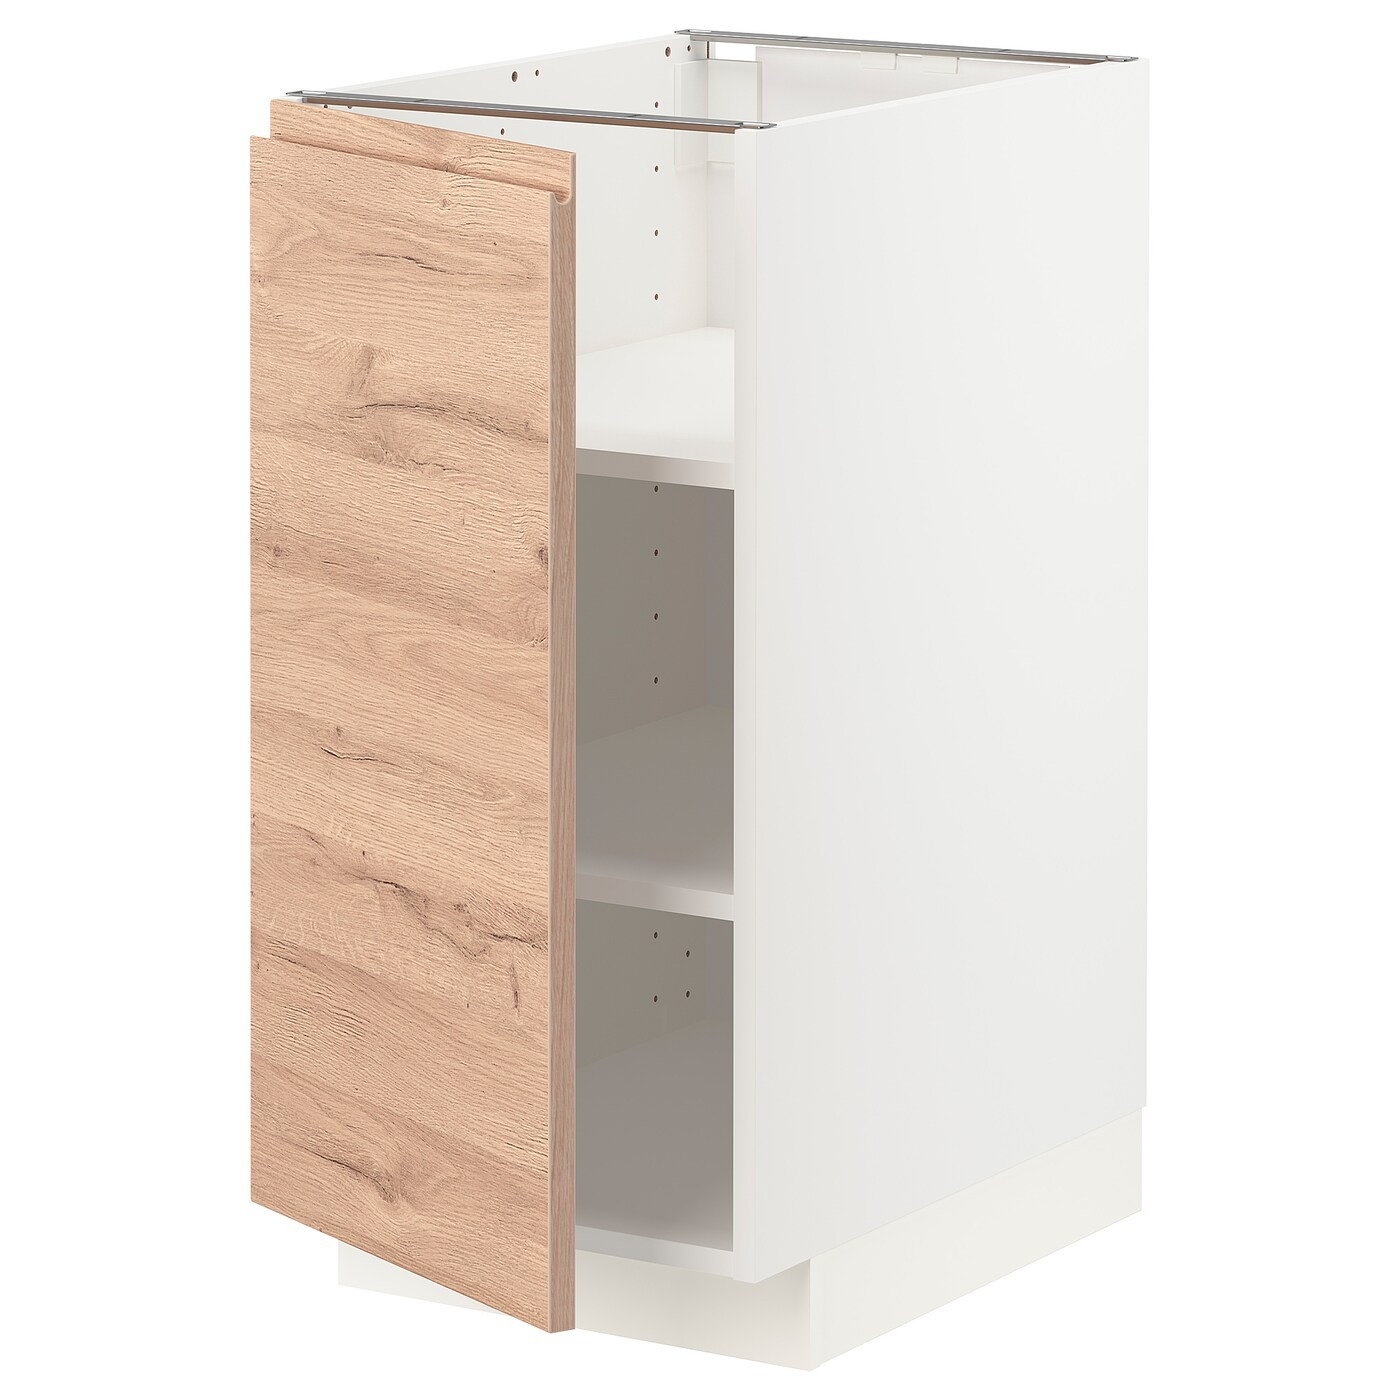 IKEA METOD МЕТОД Напольный шкаф с полками, белый / Voxtorp имитация дуб, 40x60 см 69462423 694.624.23